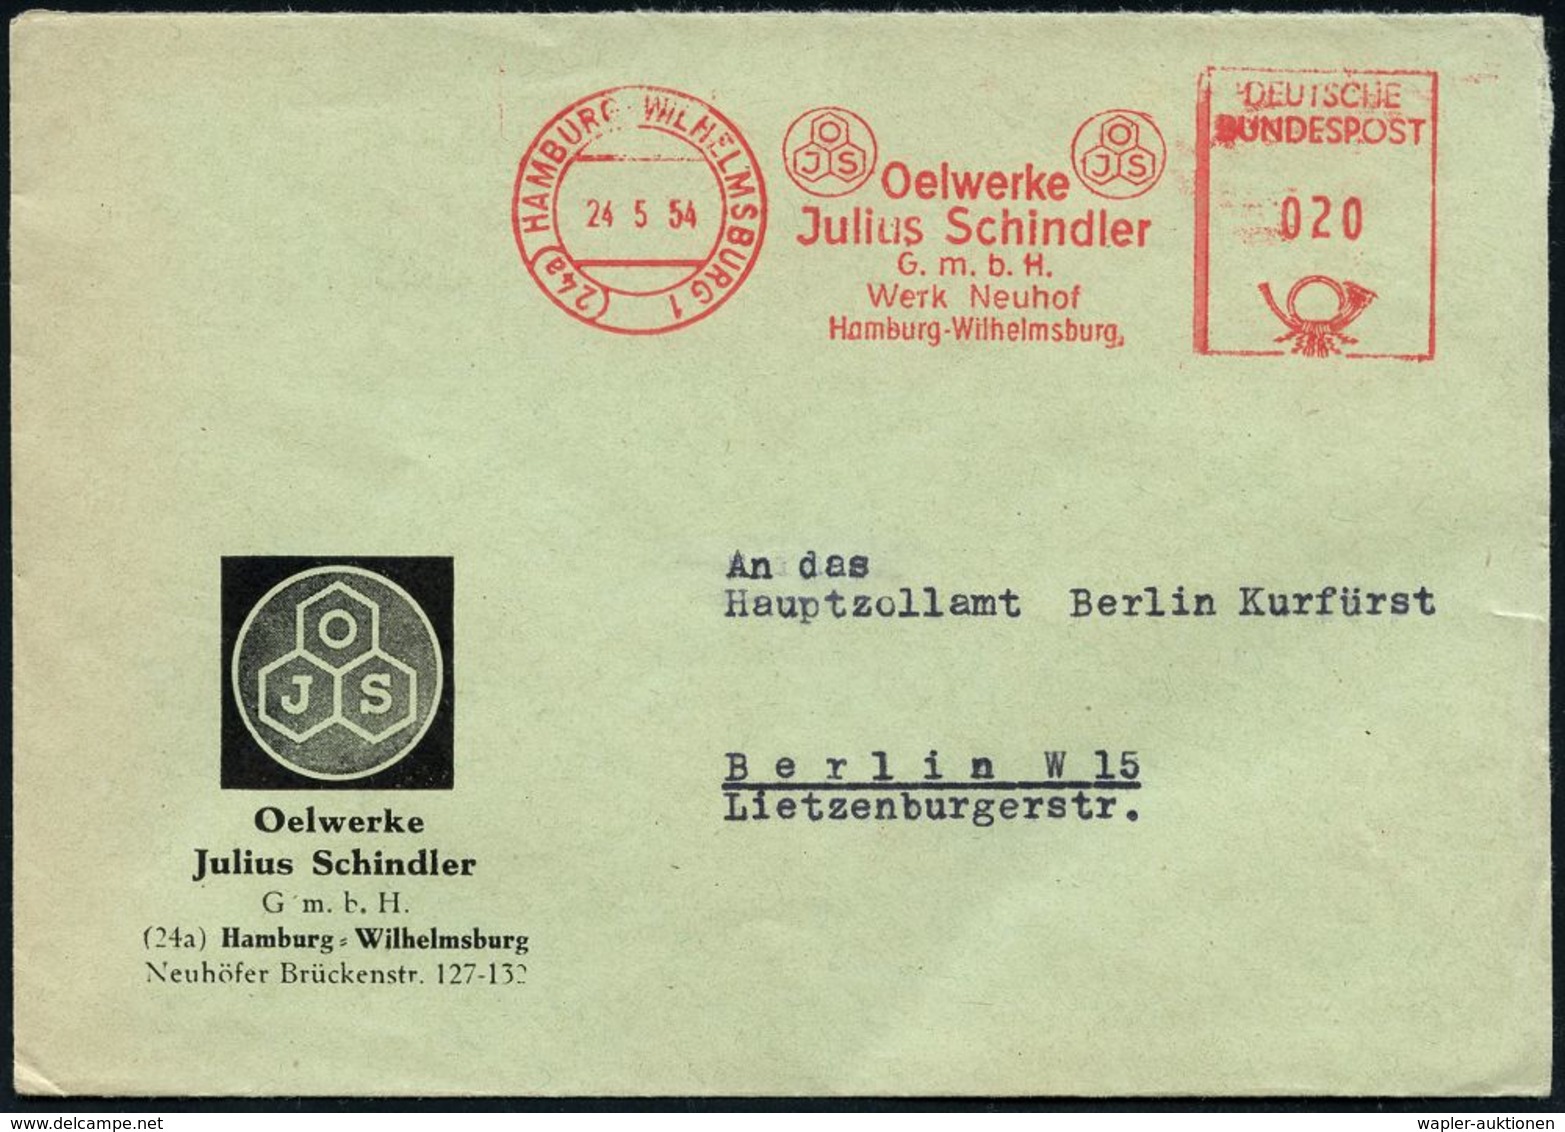 ERDÖL / PROSPEKTIERUNG & GEWINNUNG : (24a) HAMBURG-WILHELMSBURG 1/ OJS/ Oelwerke/ Julius Schindler.. 1954 (24.5.) AFS (M - Oil